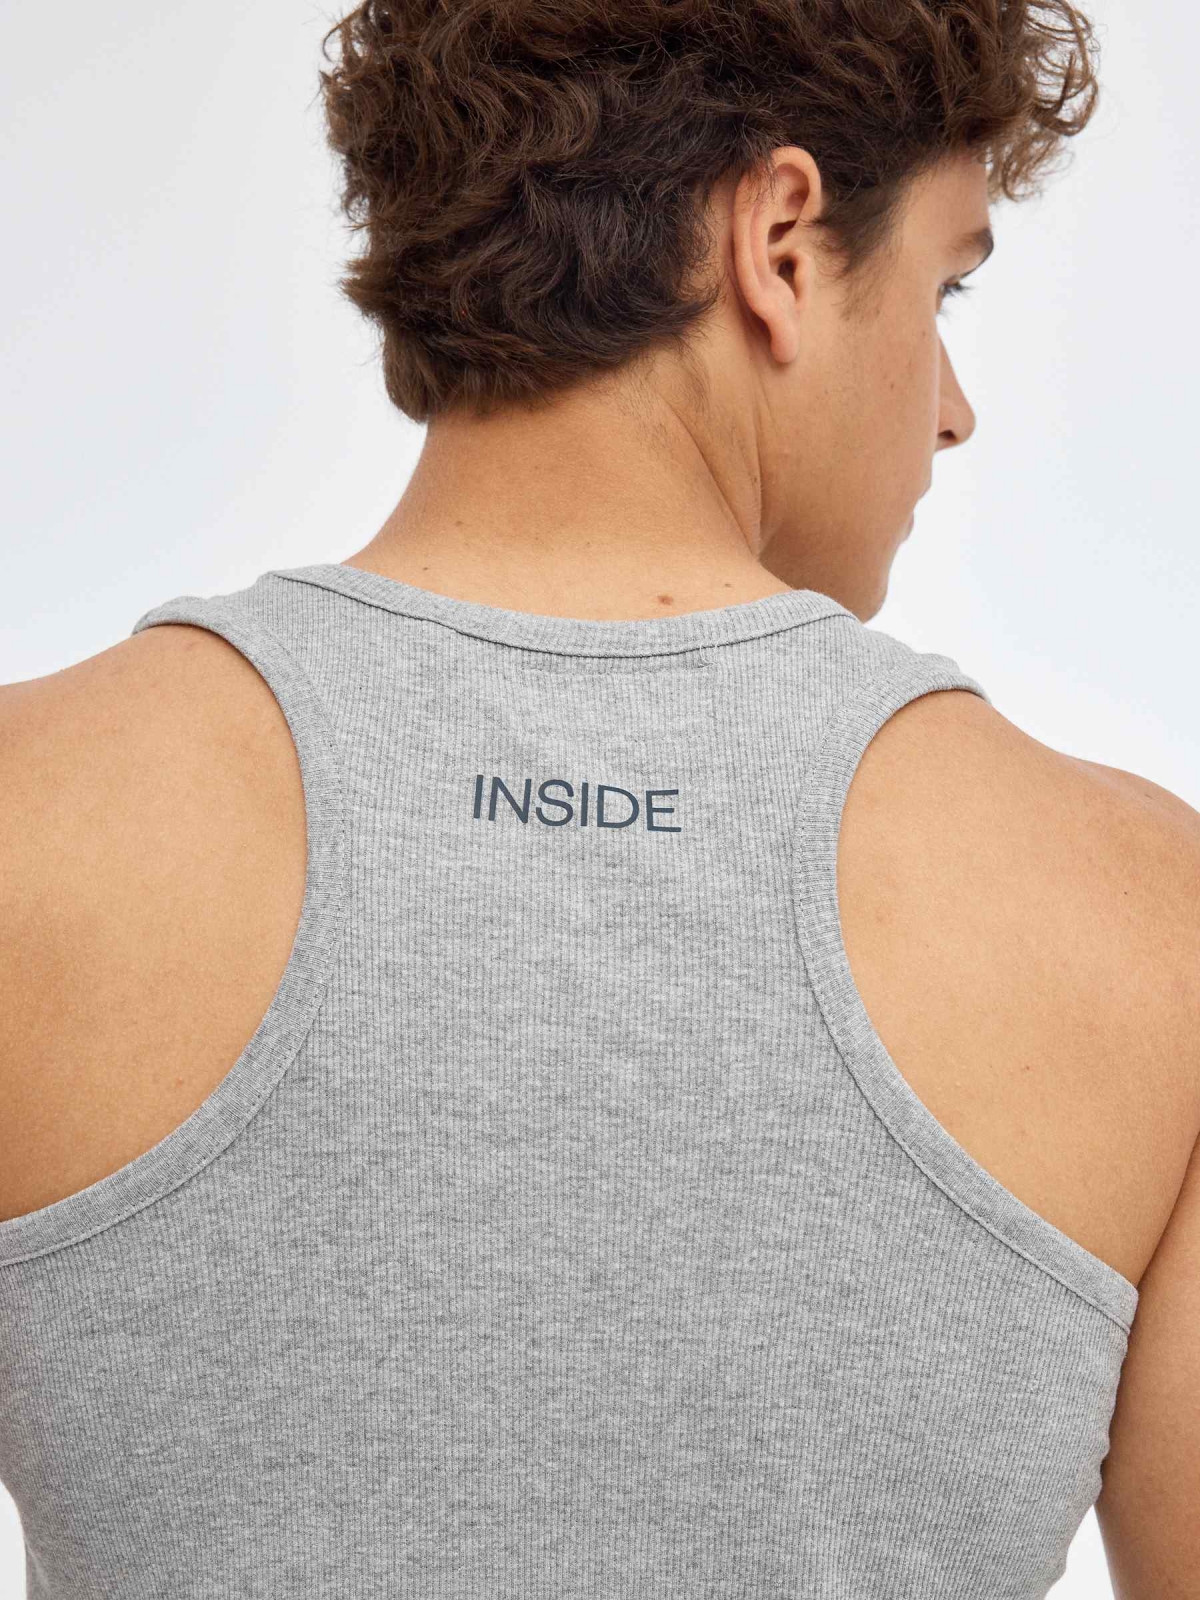 Camiseta básica espalda nadadora gris vista detalle